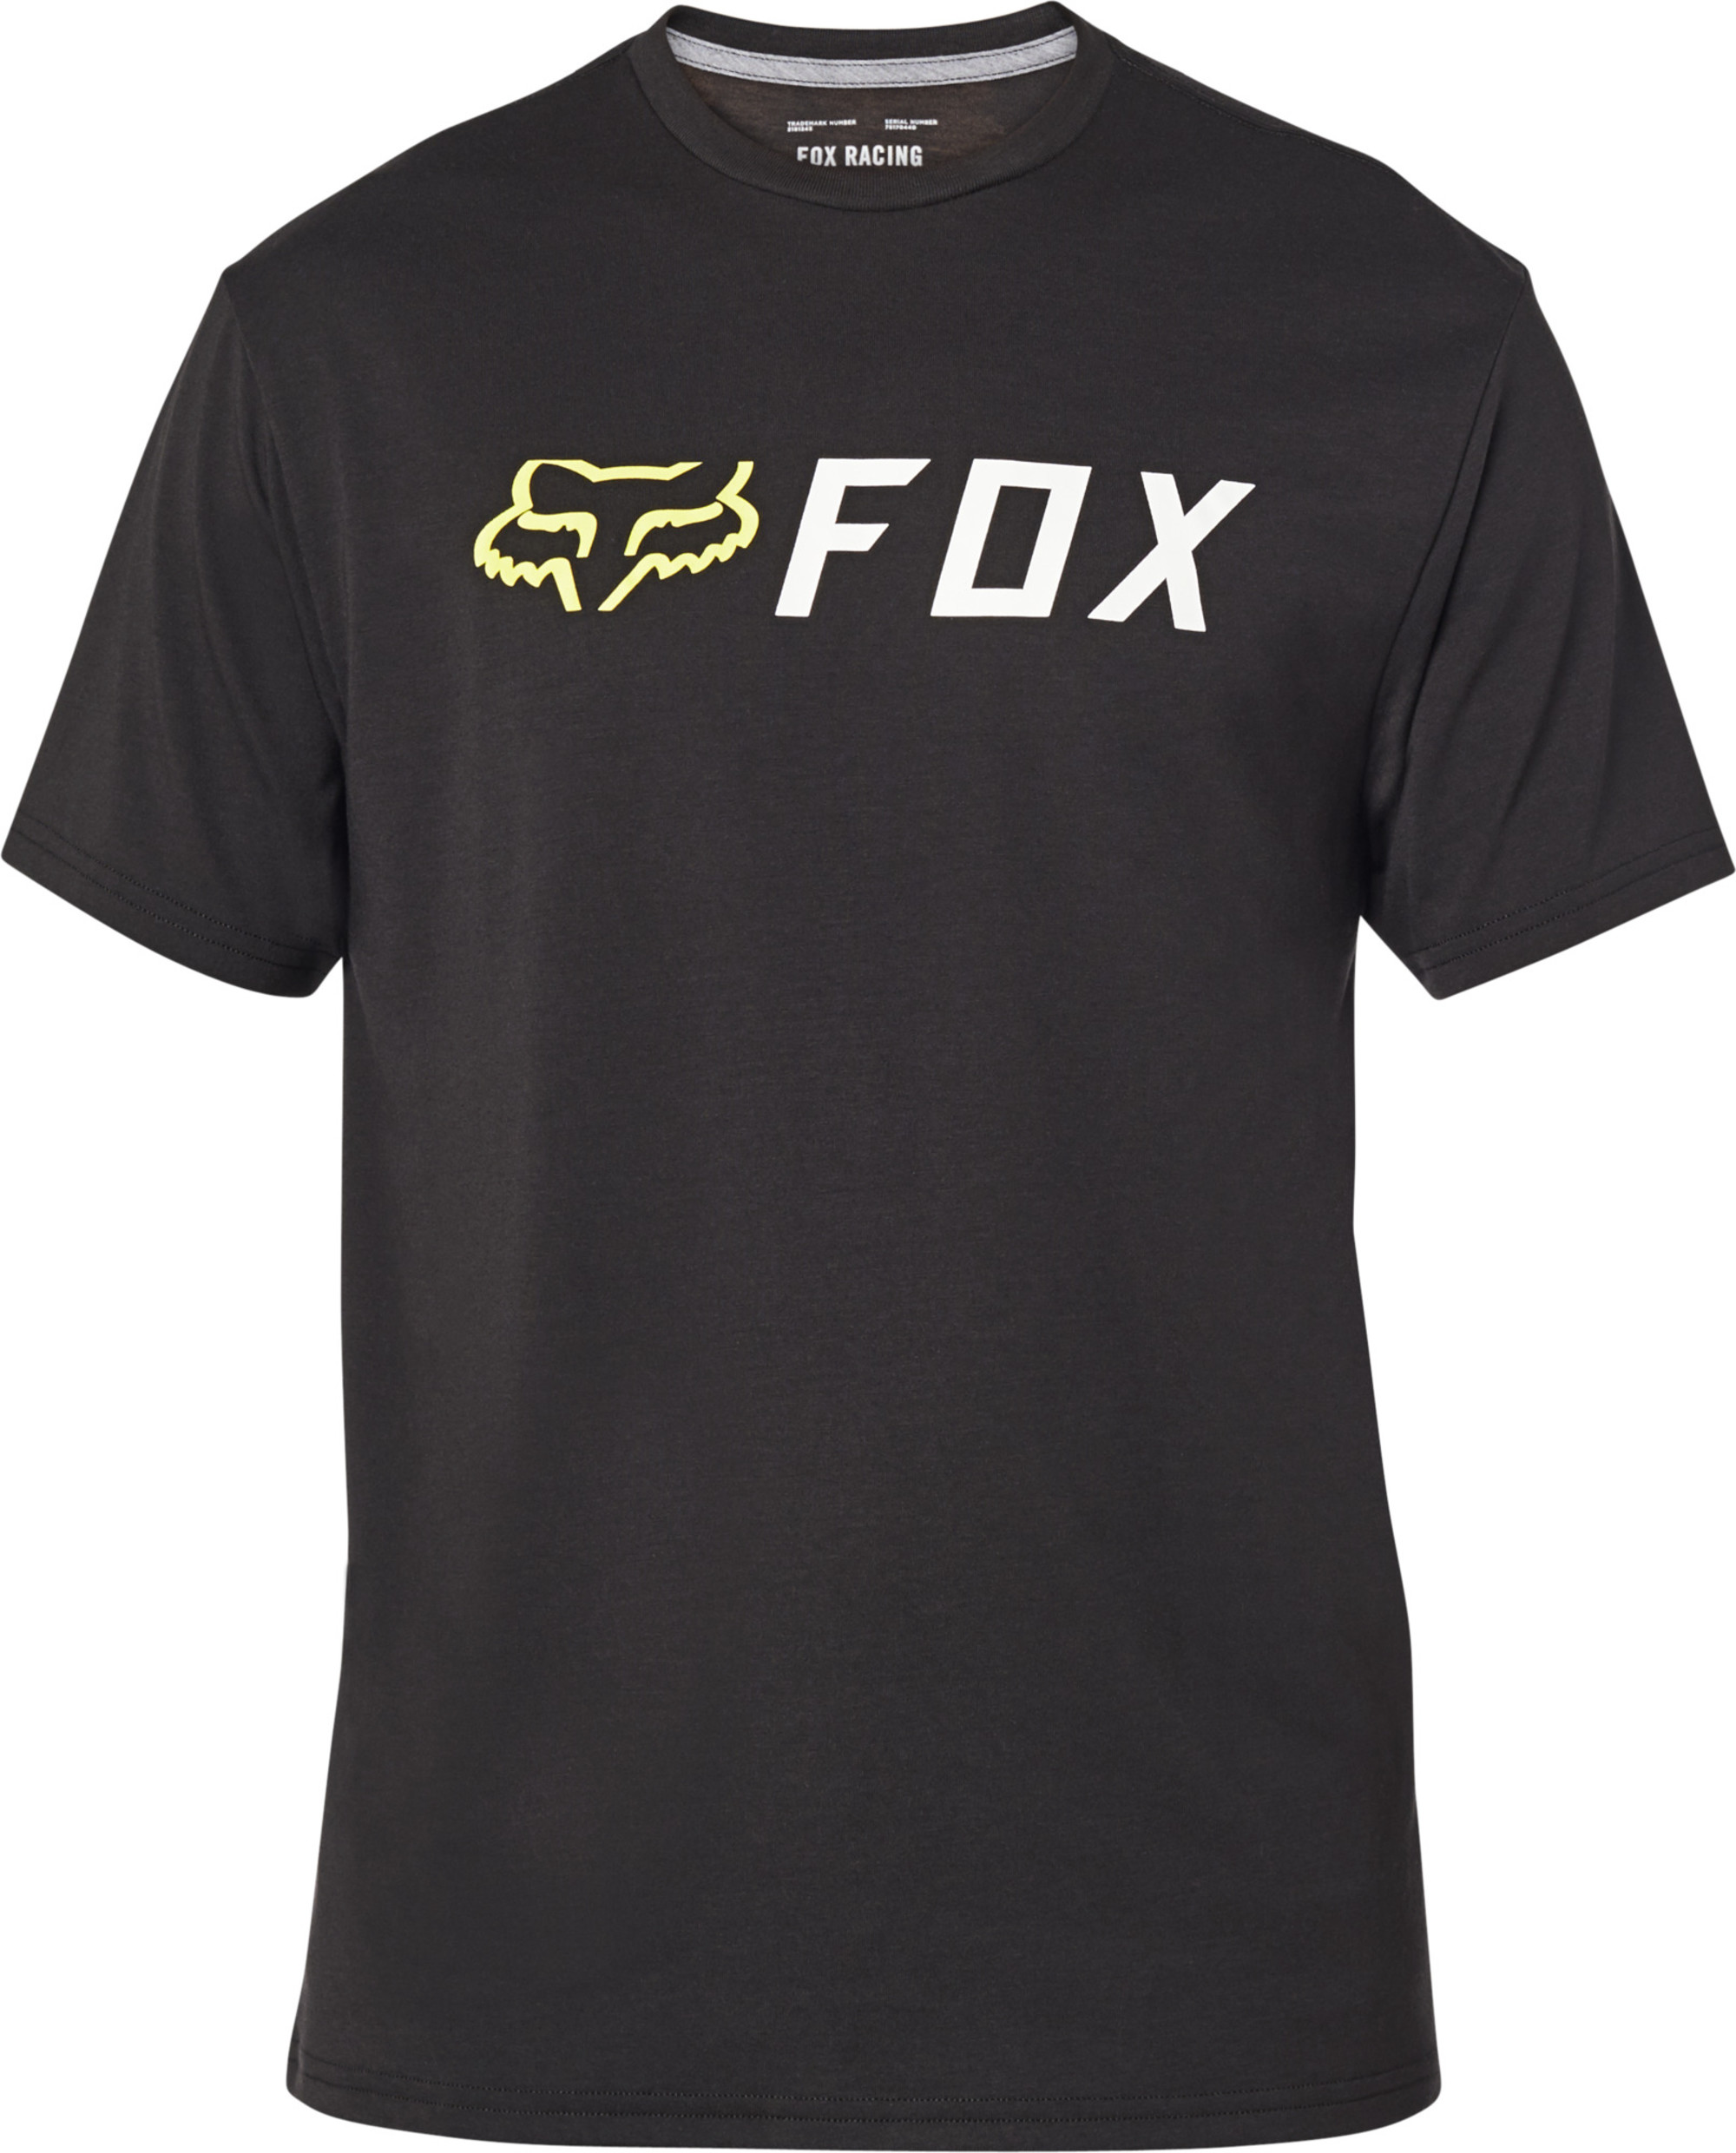 fox racing t-shirt shirts for men apex tech